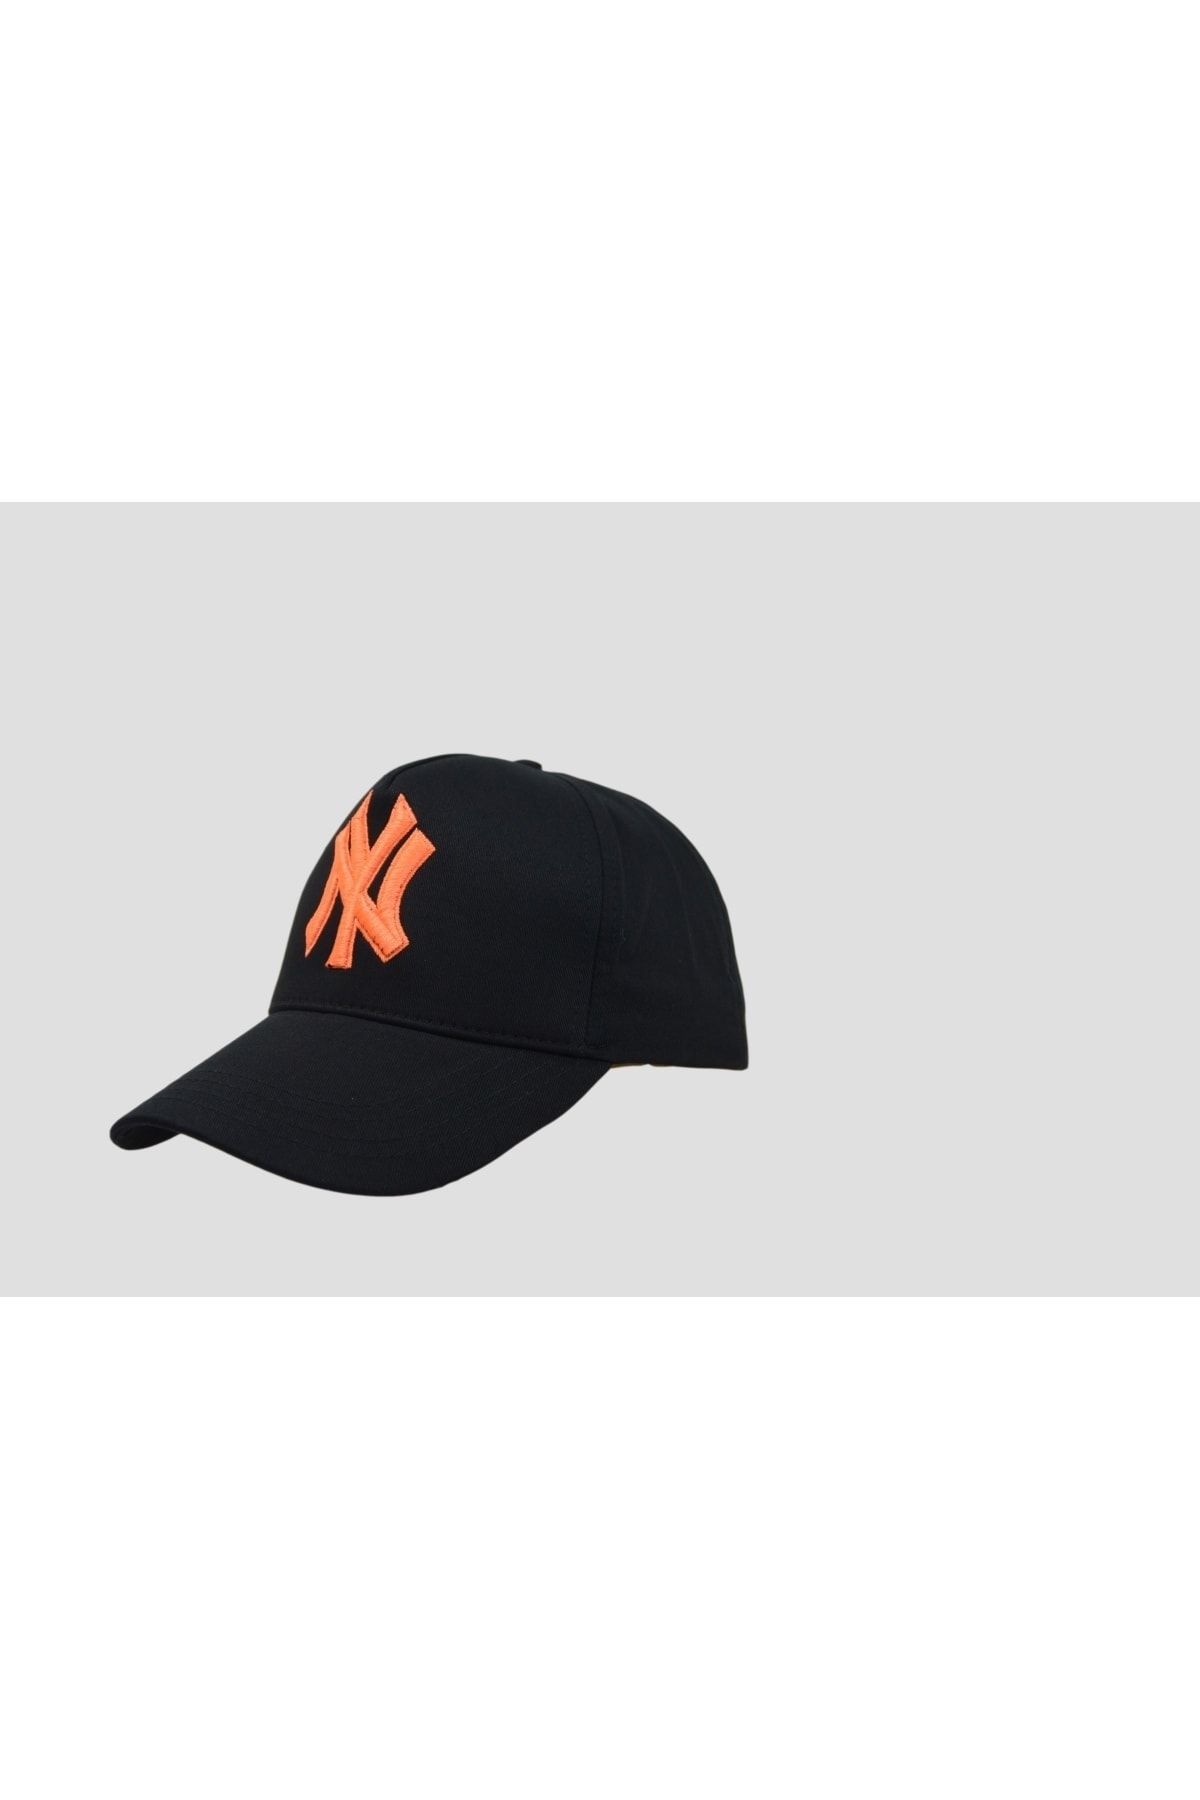 Nacar Ny New York Unisex Siyah Şapka Özel Oranj Nakış